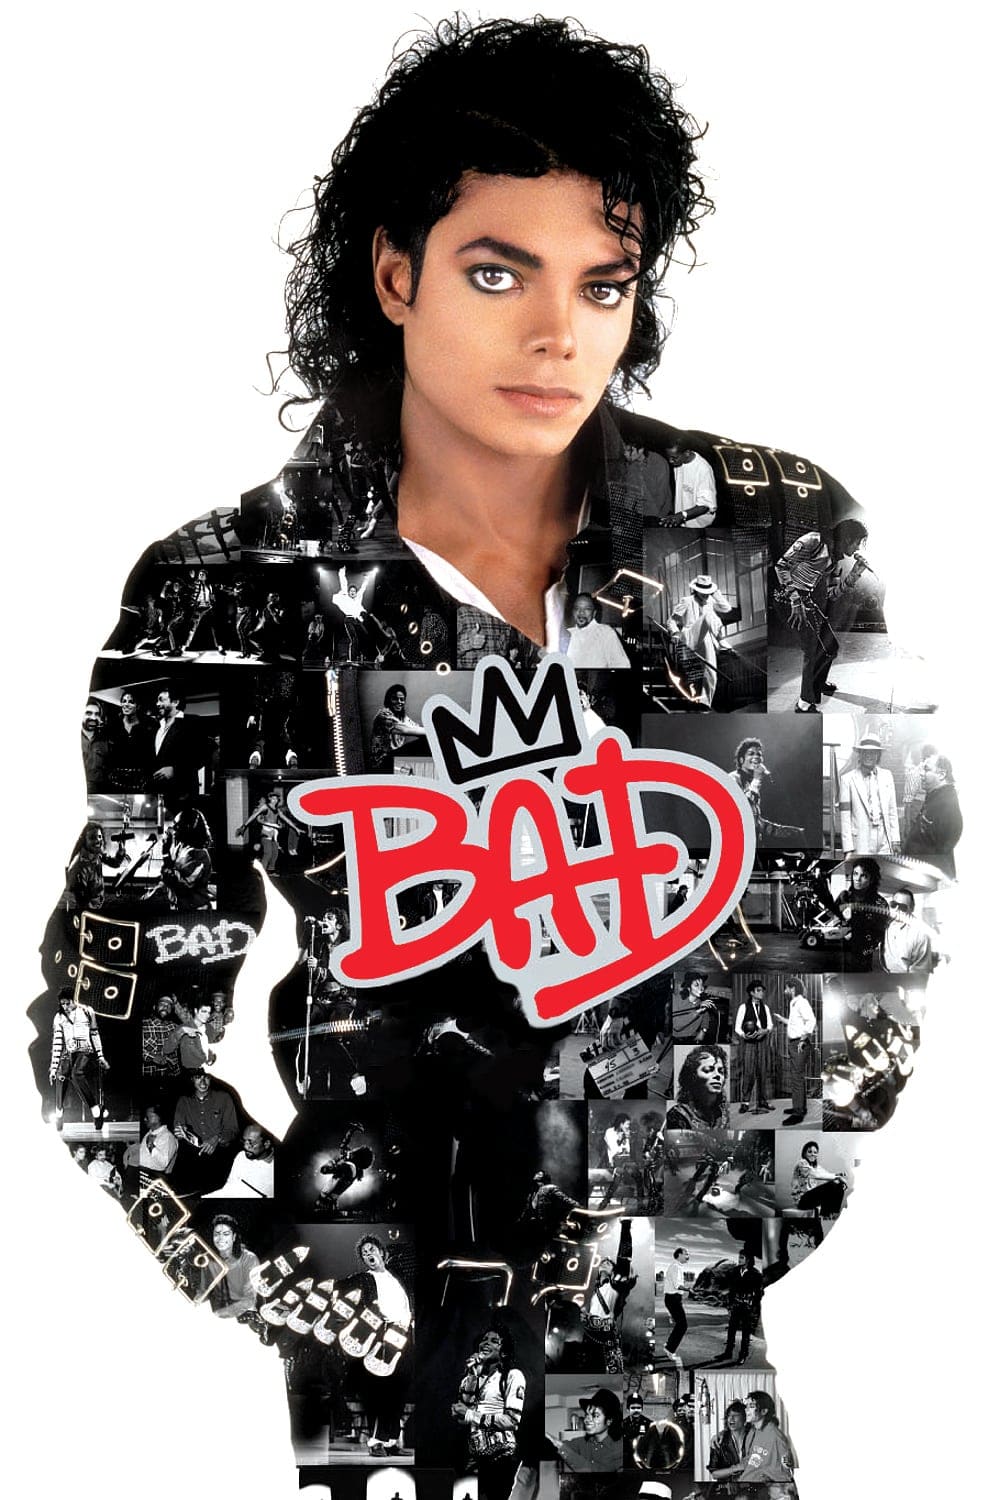 Plakat von "Bad"